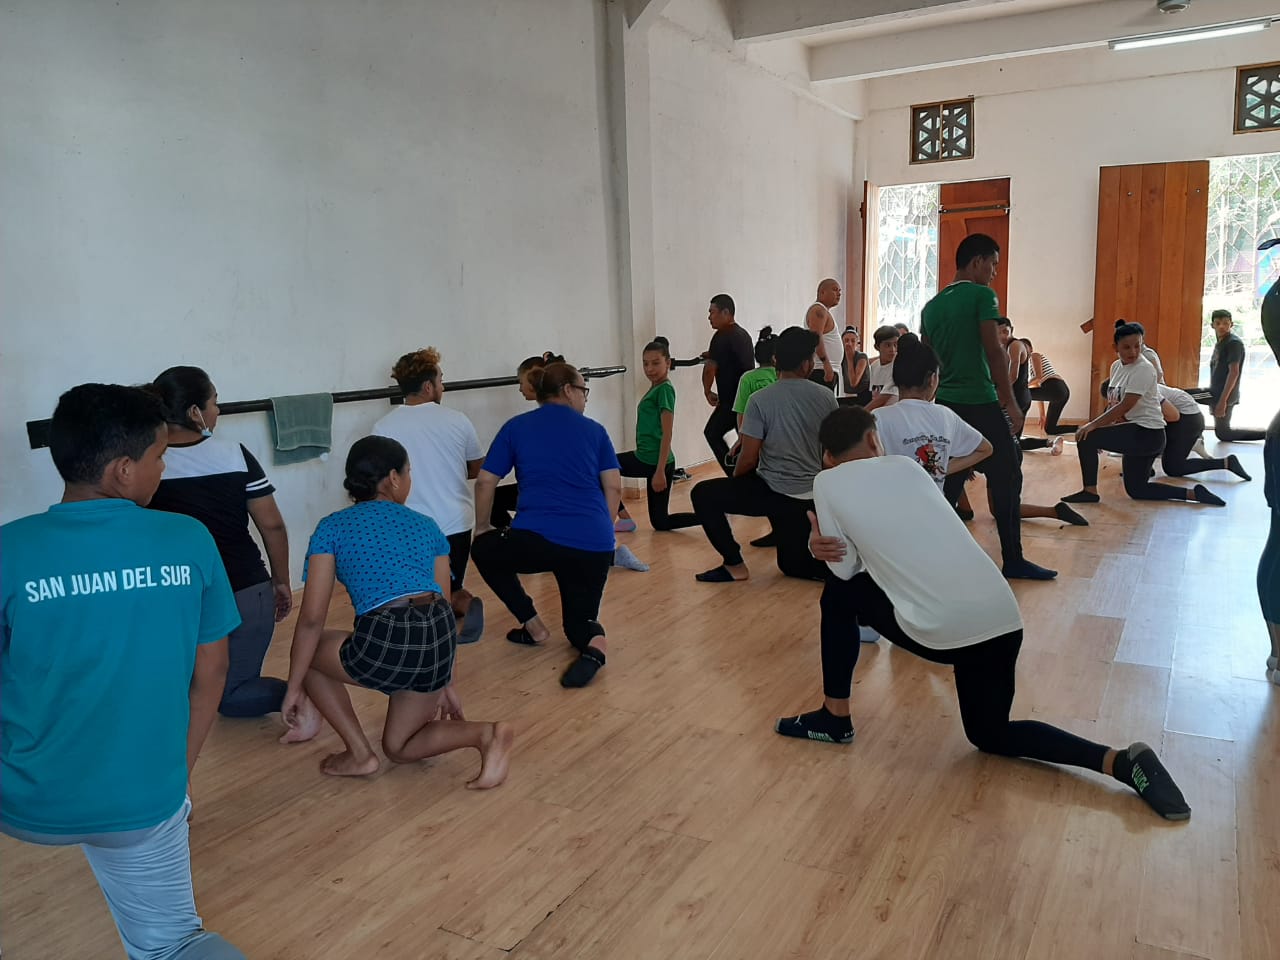 Gradúan a 60 instructores de danza folklórica Managua. Por Jaime Mejía/Radio La Primerísima